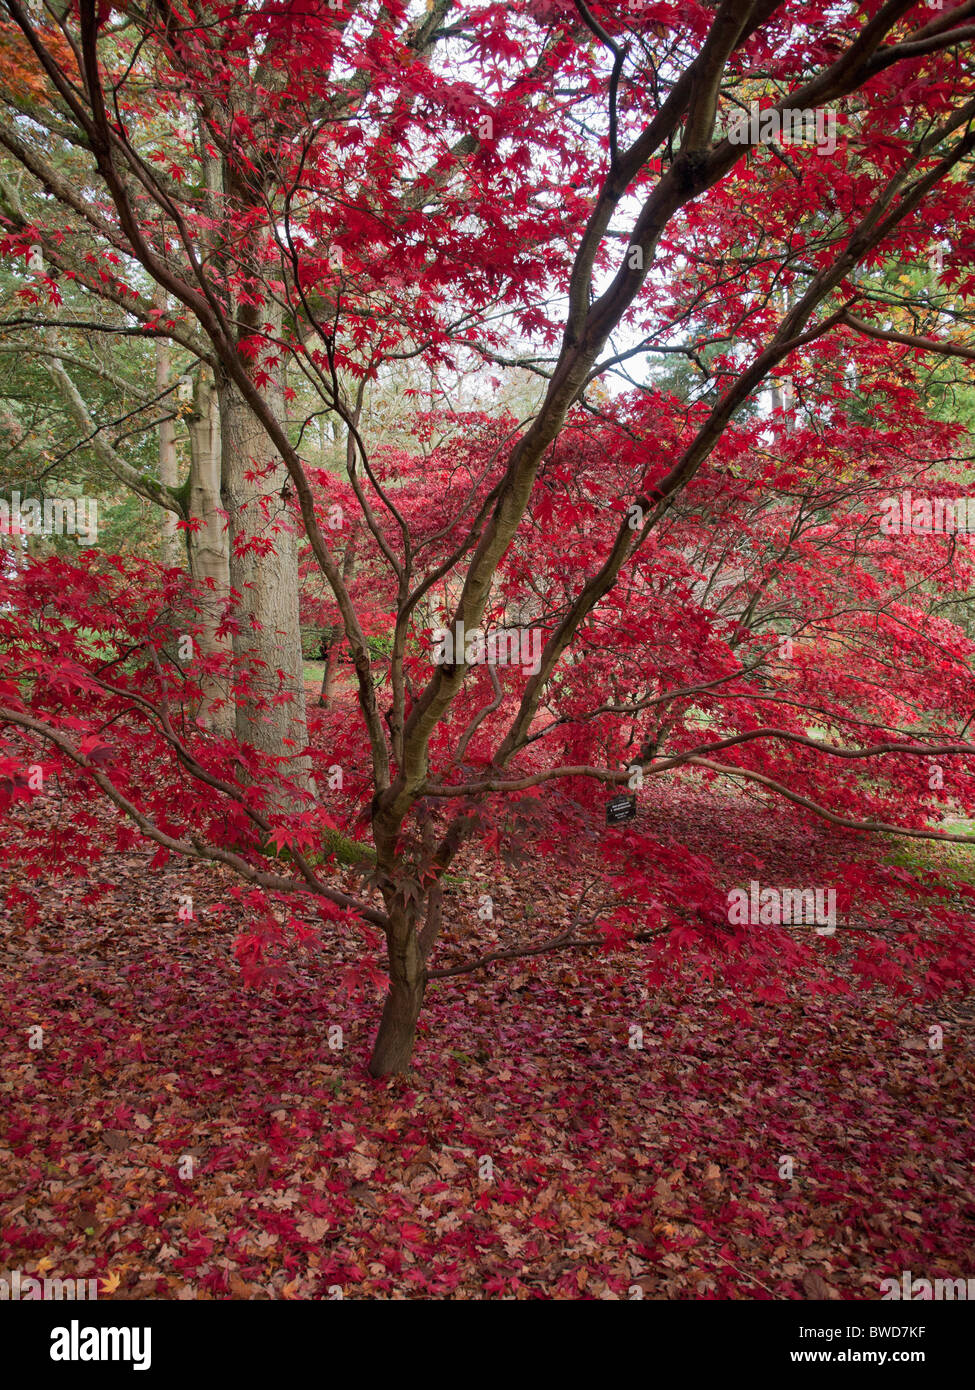 Au bois d'automne batsford arboretum les Cotswolds gloucestershire Midlands England uk Banque D'Images